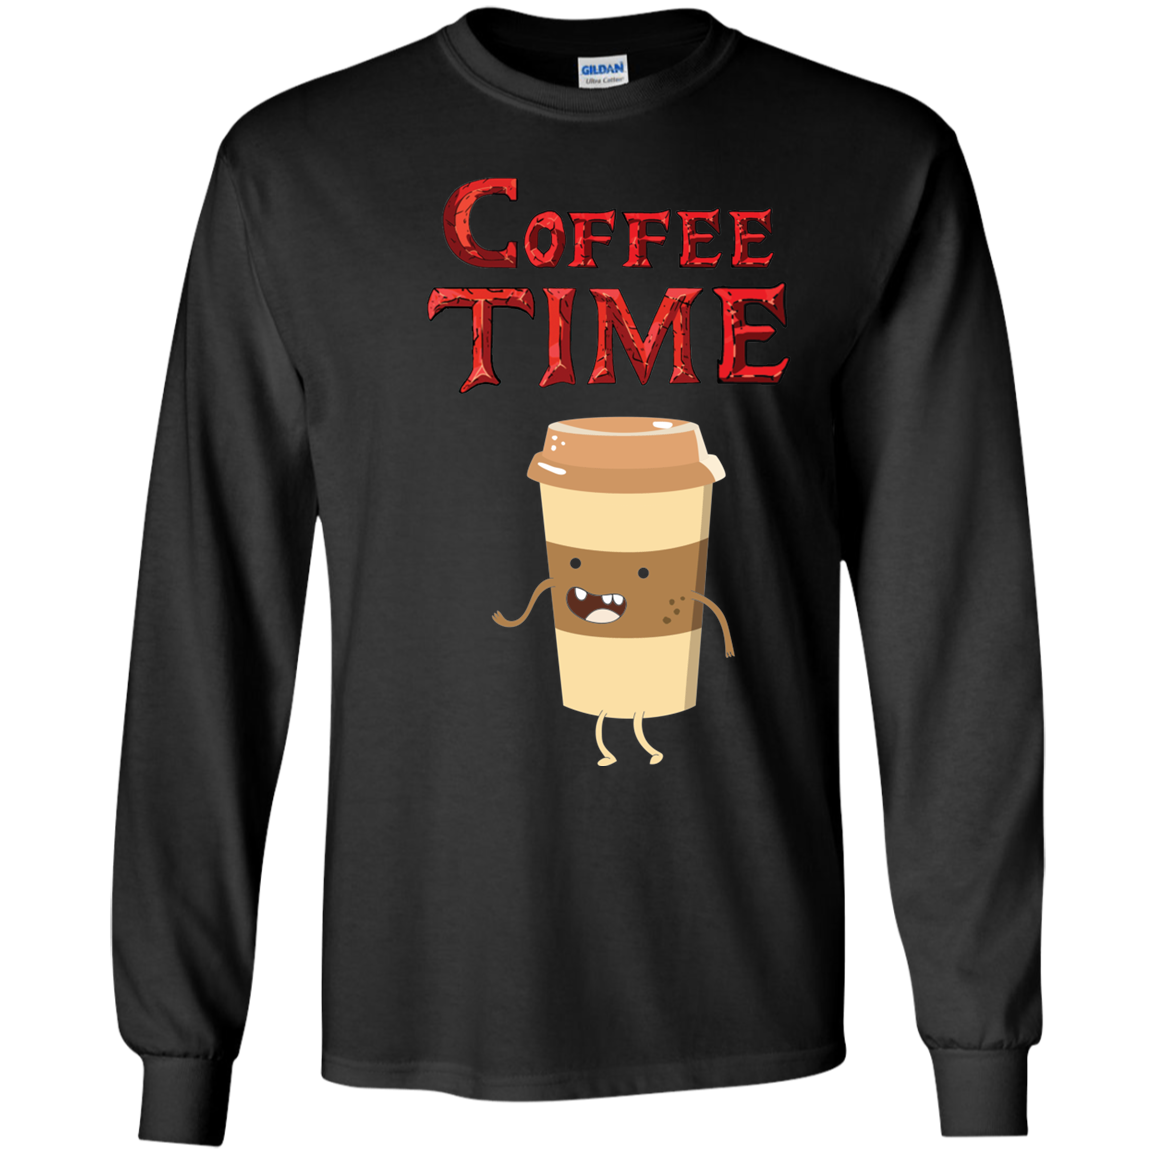 Coffee Time - Coffee Lovers Shirt